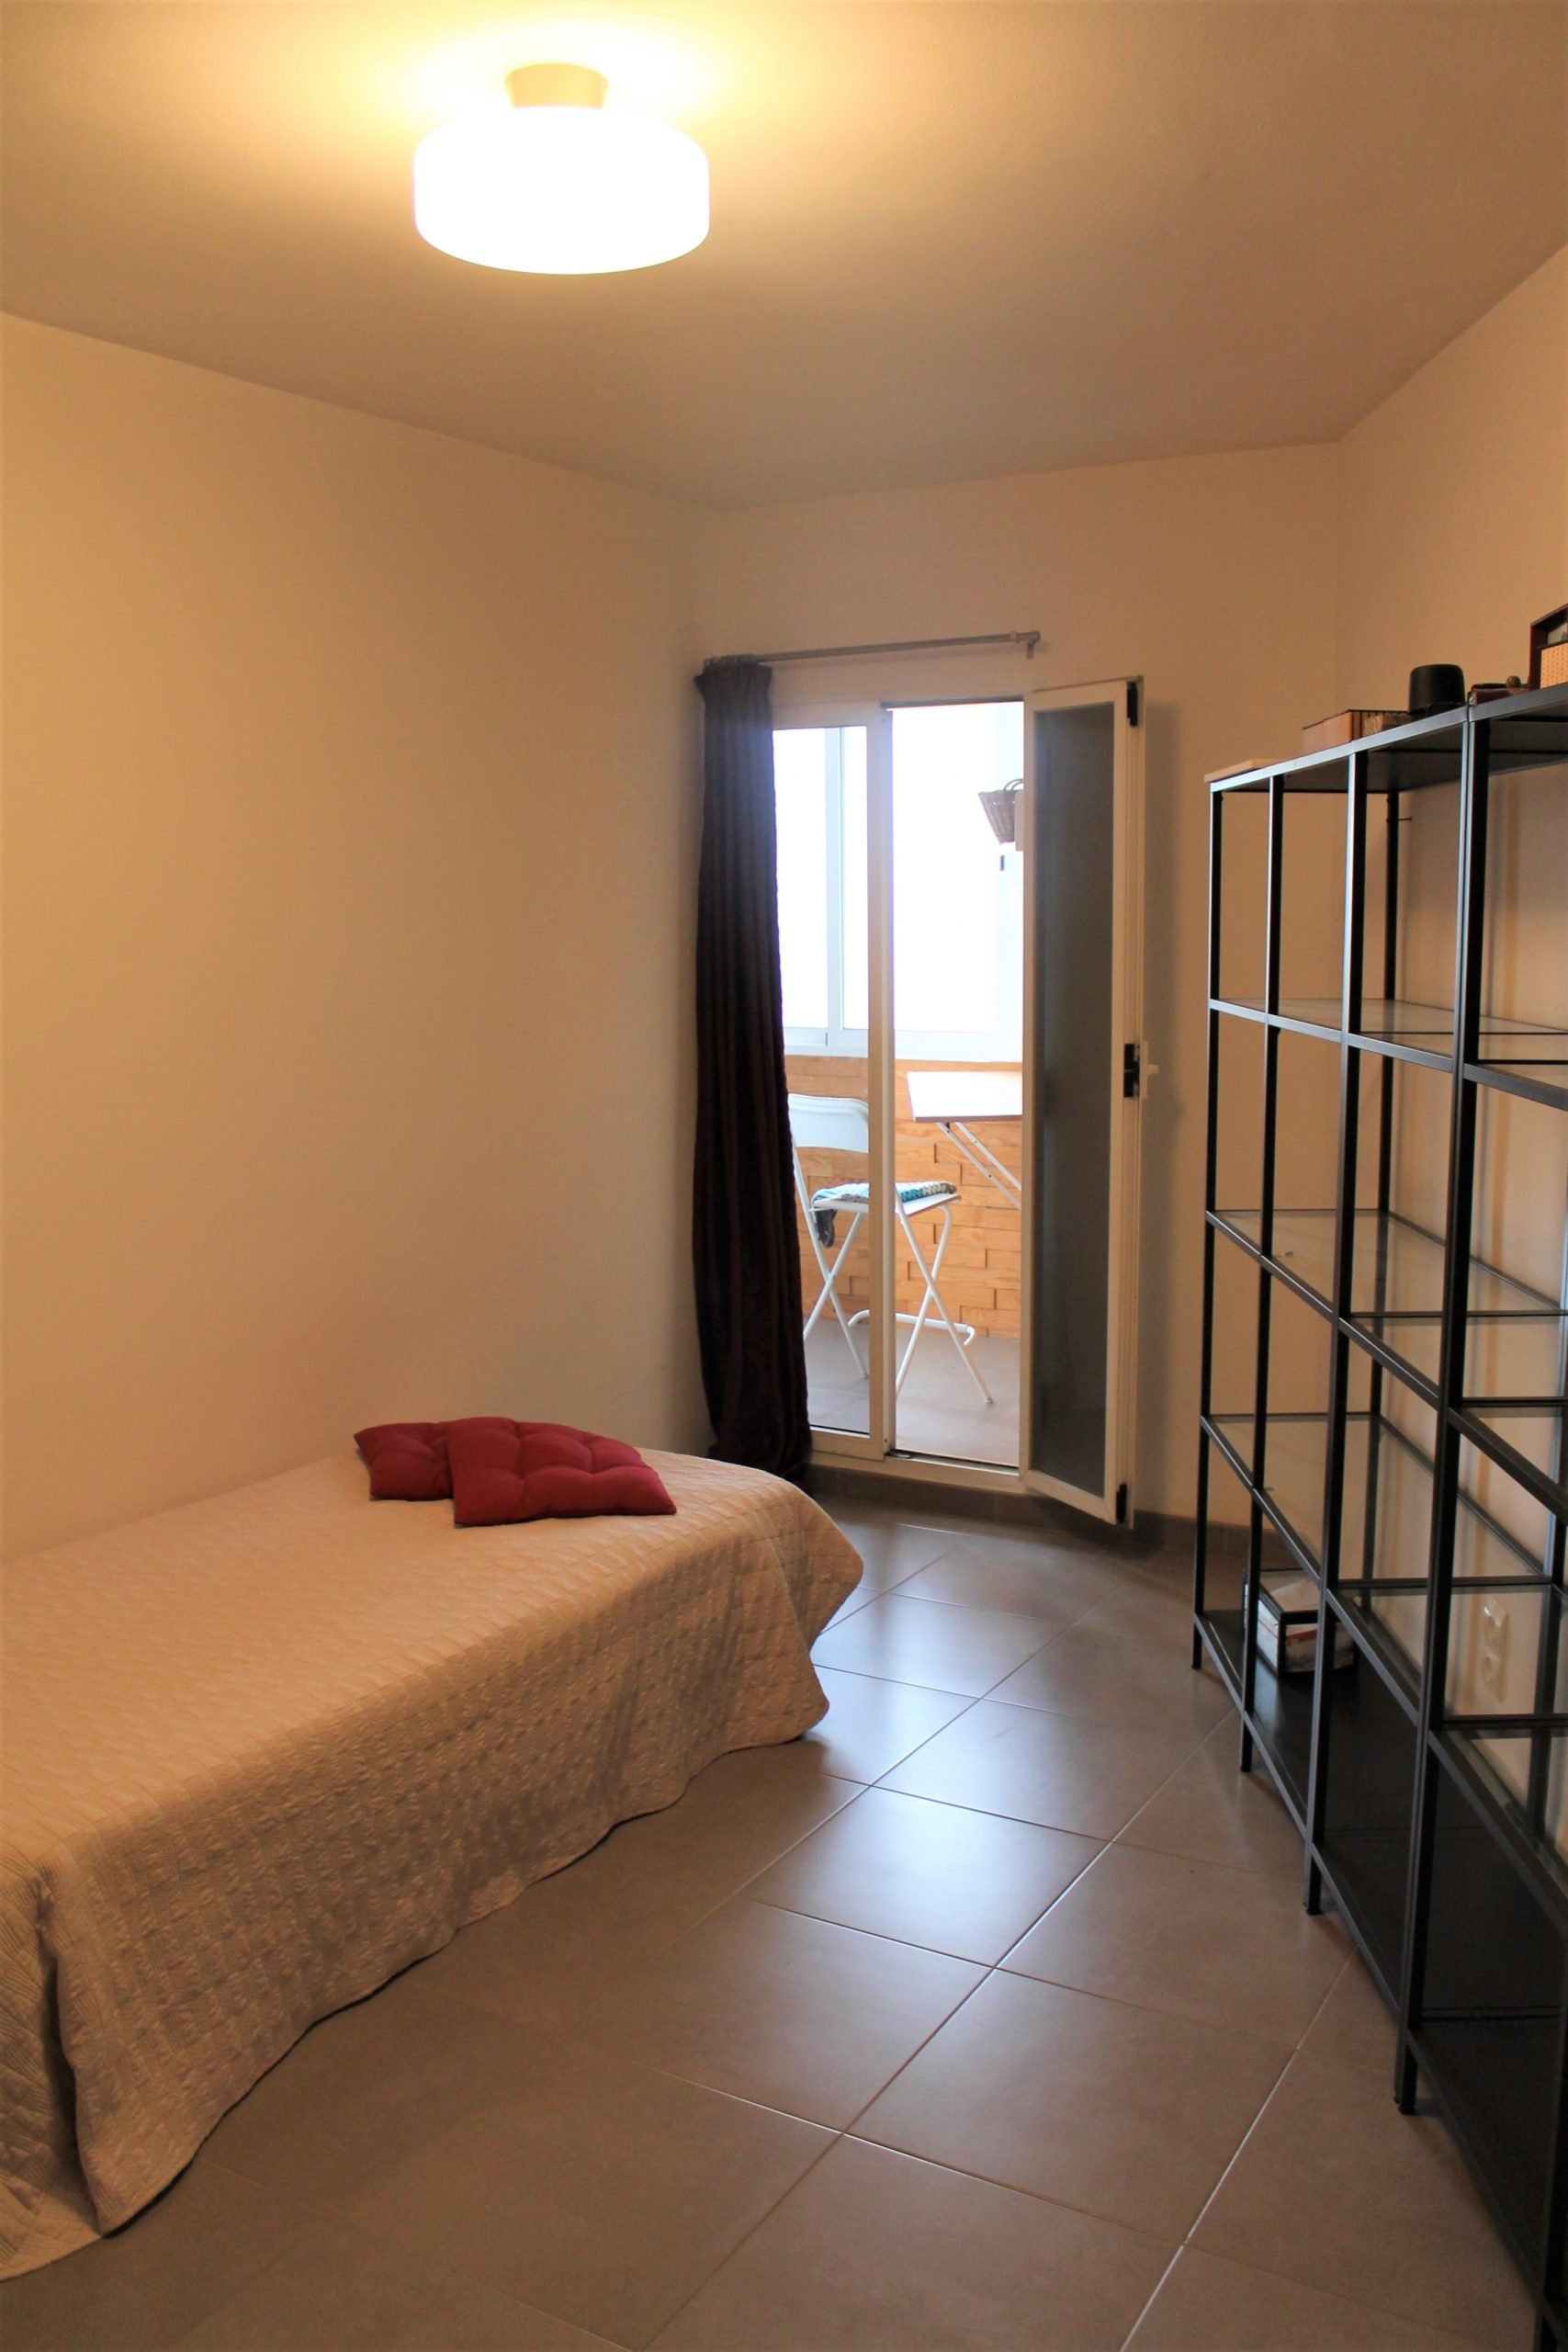 Sueca 38 – Spacious expat apartment in Valencia